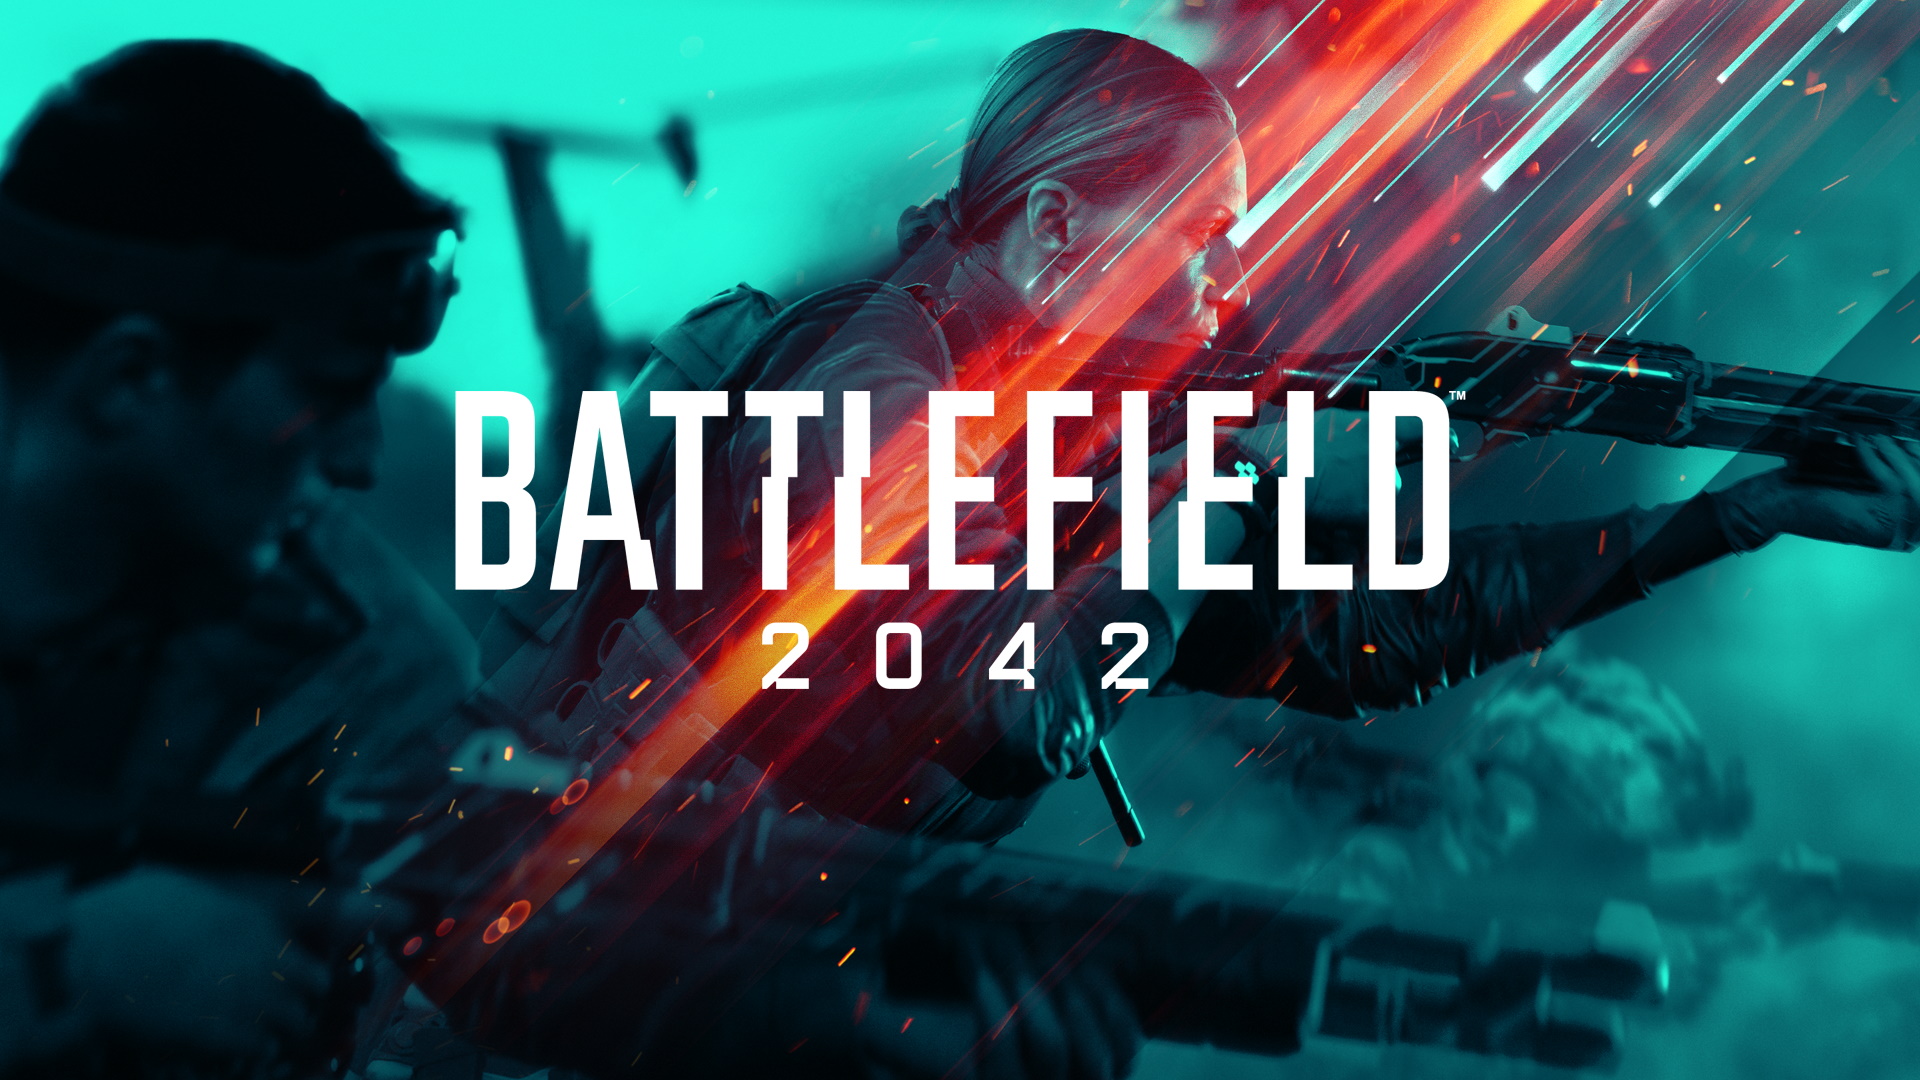  battlefield 2042, tags: 3.1.2 - media.contentapi.ea.com